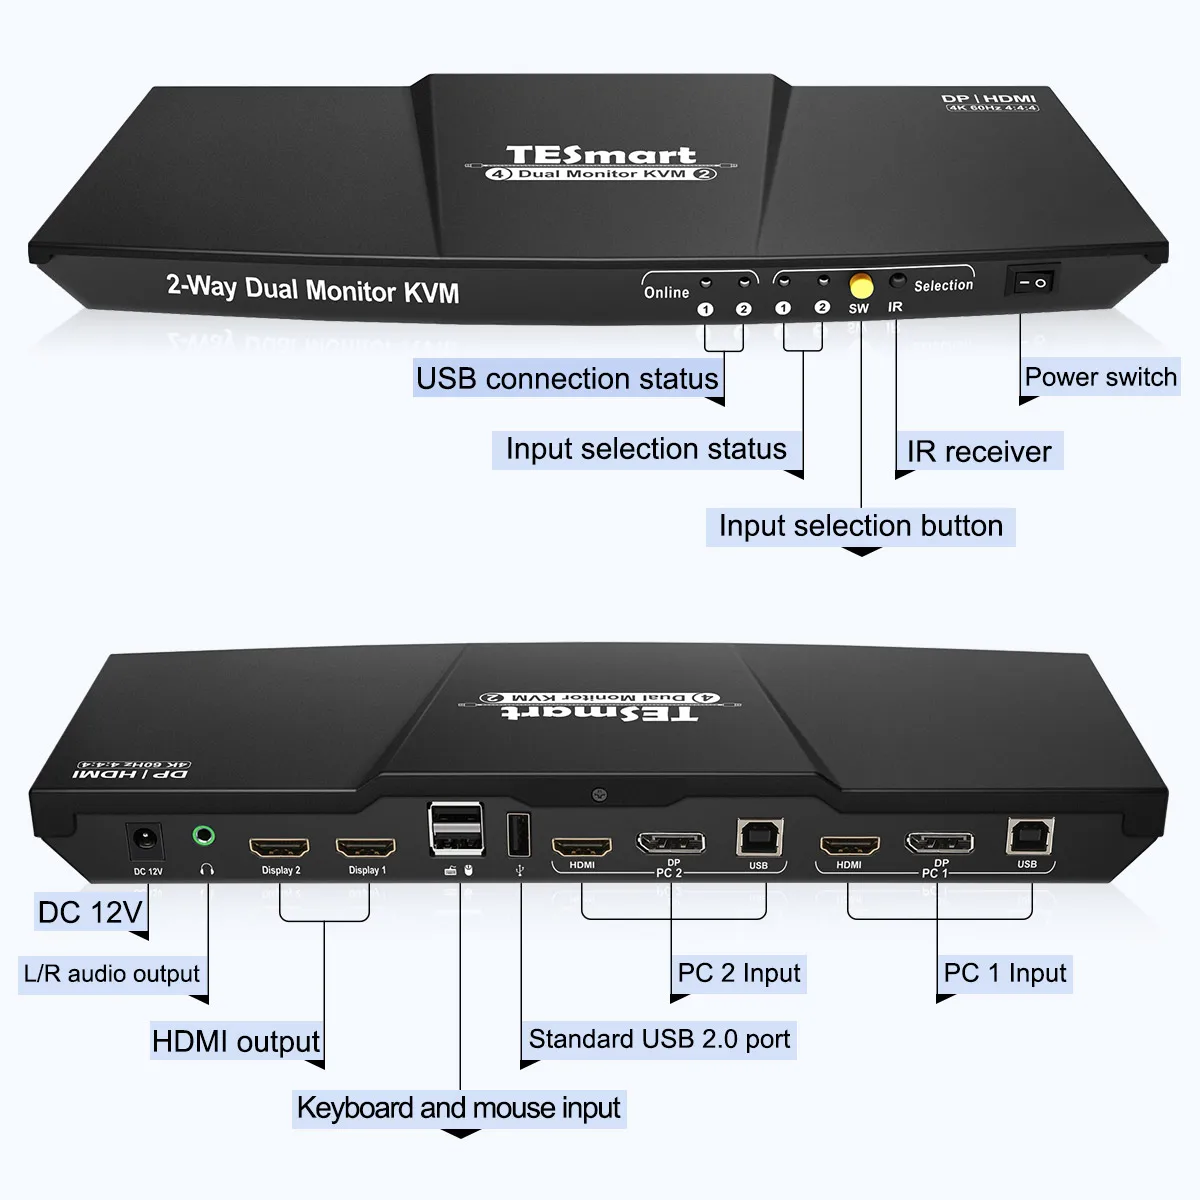 Tesmart-HDMIポート,2x2,デュアルモニター,kvmスイッチ,4k @  60hz,USBハブ,オーディオ出力,キーボード,マウス,2台のコンピューター用